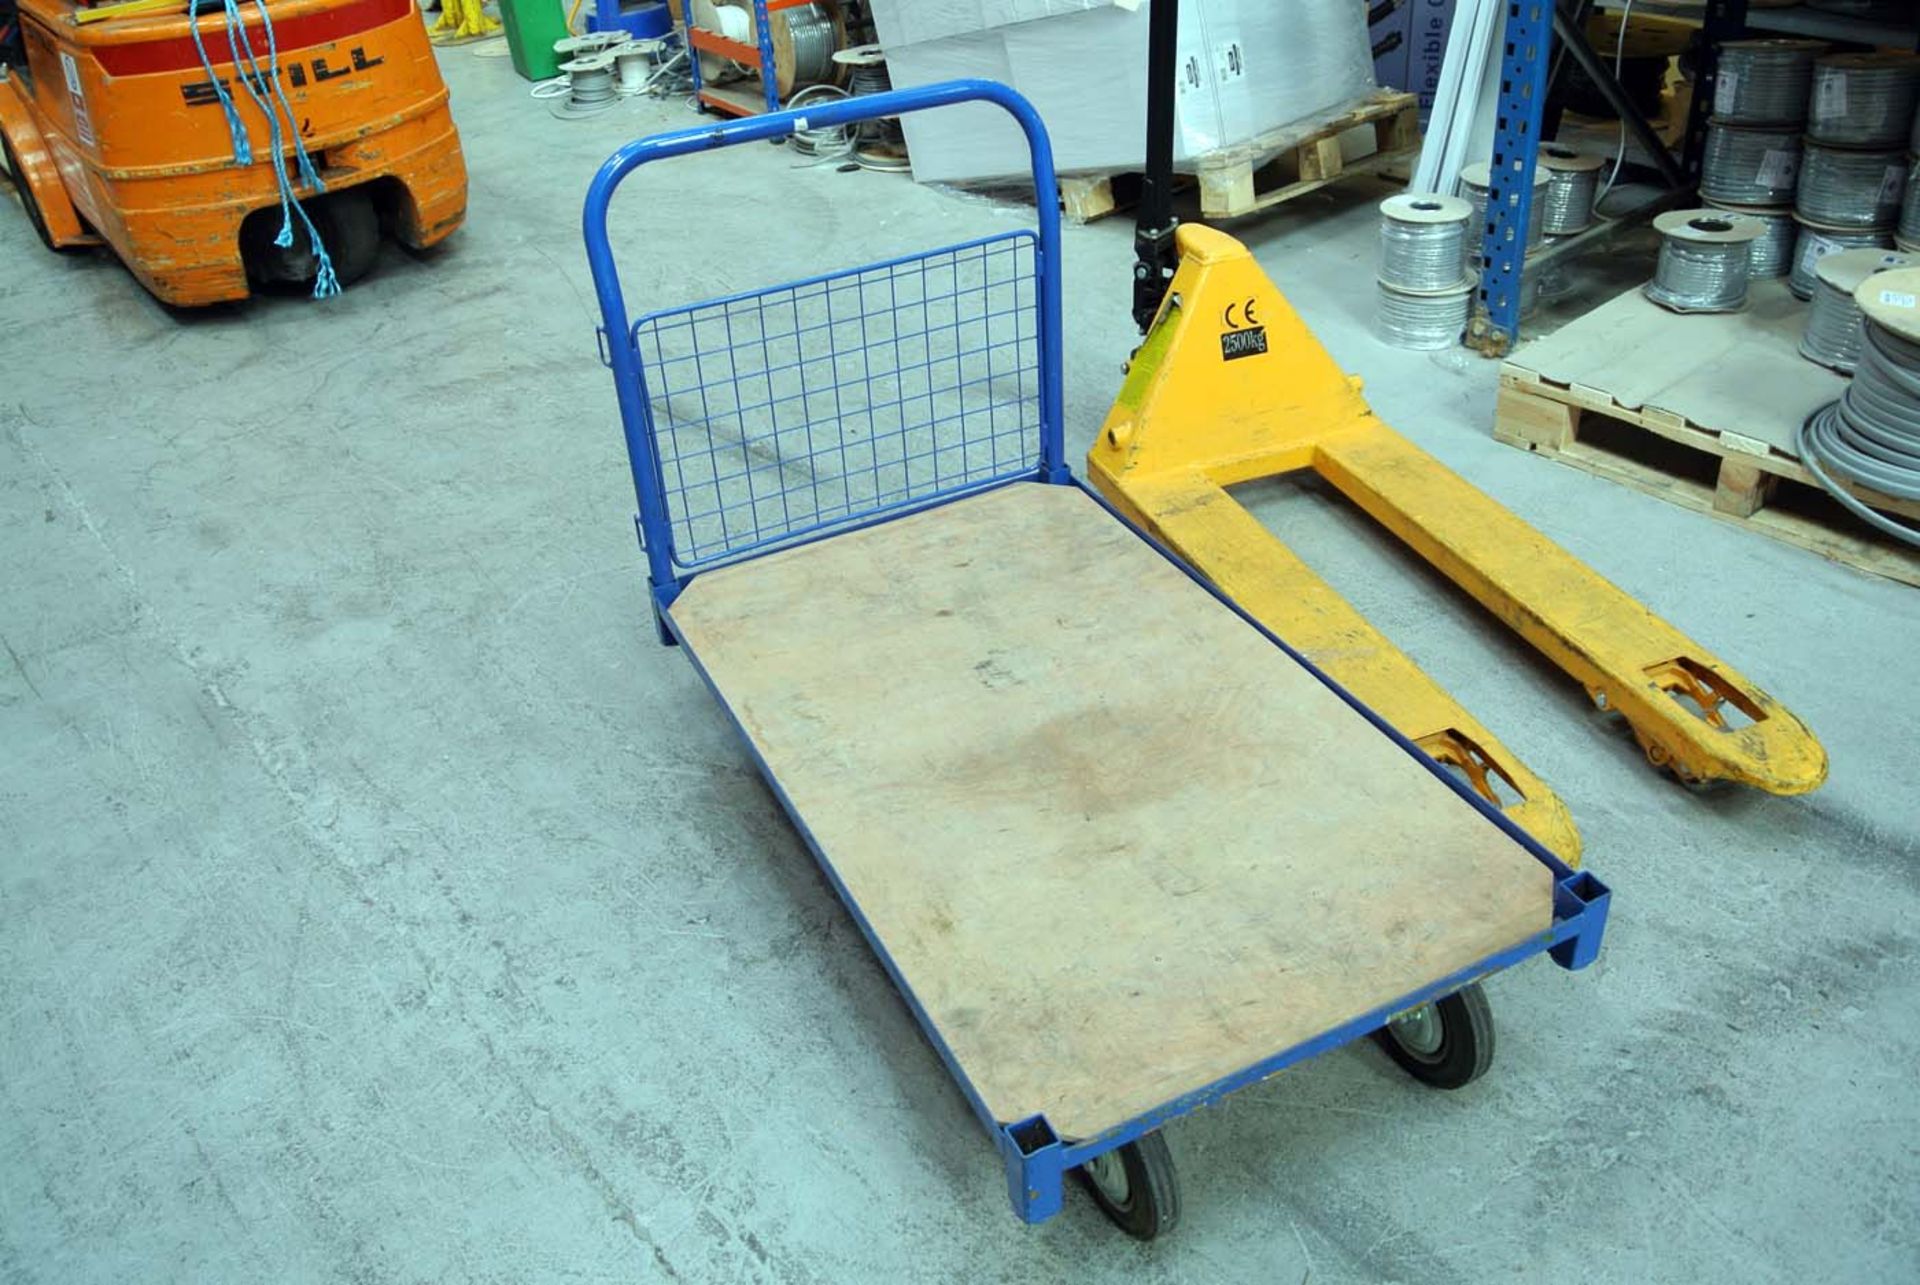 Large 4 wheel warehouse cart